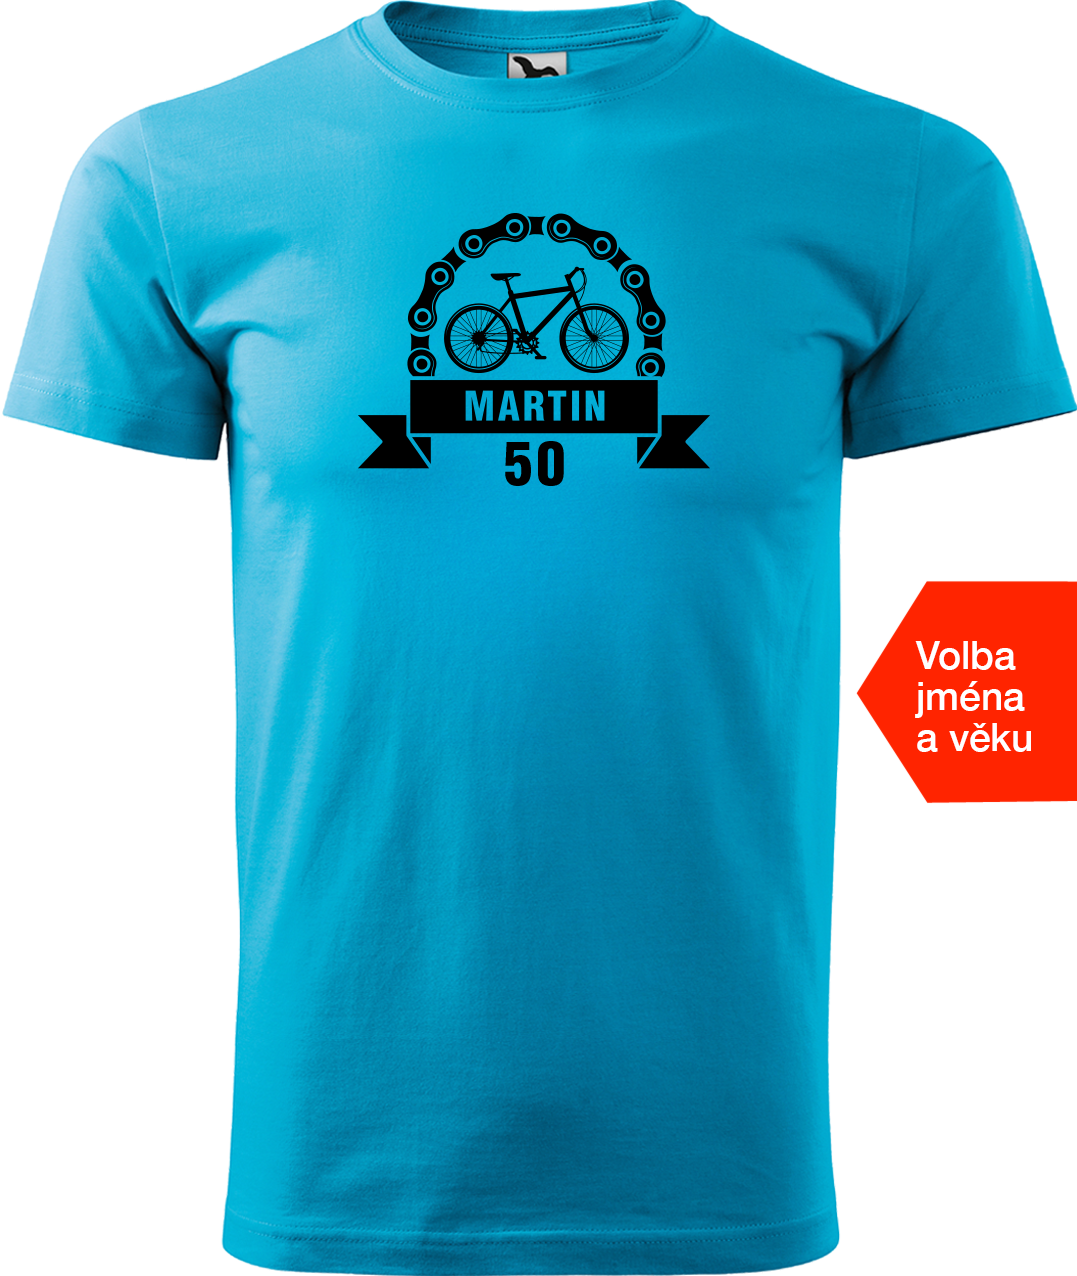 Pánské tričko pro cyklistu se jménem a věkem - Blahopřání Velikost: L, Barva: Tyrkysová (44)